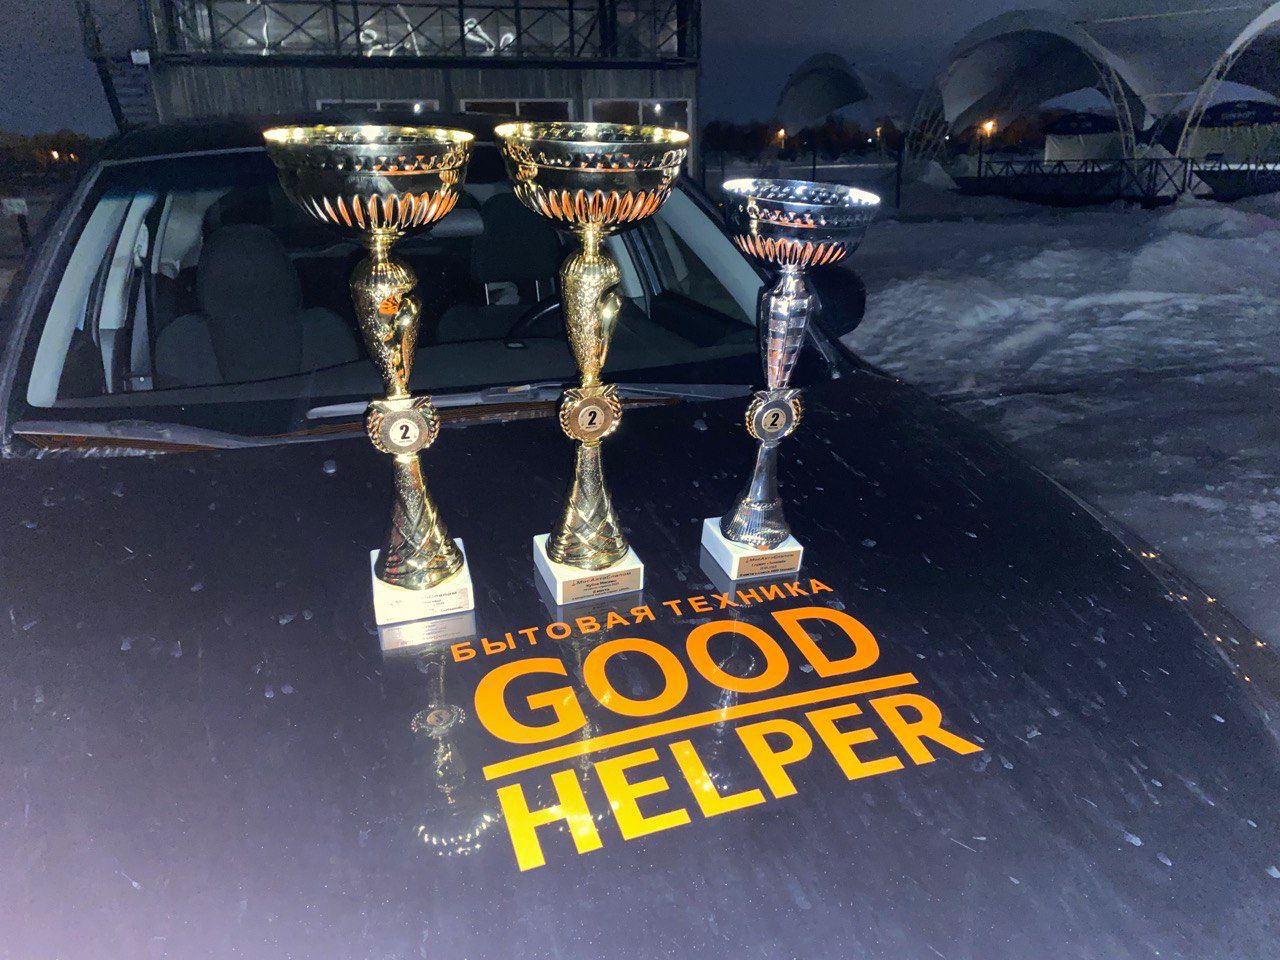 фото: Автопилот, спонсируемый компанией GoodHelper, занял 3 первых места в личном зачете